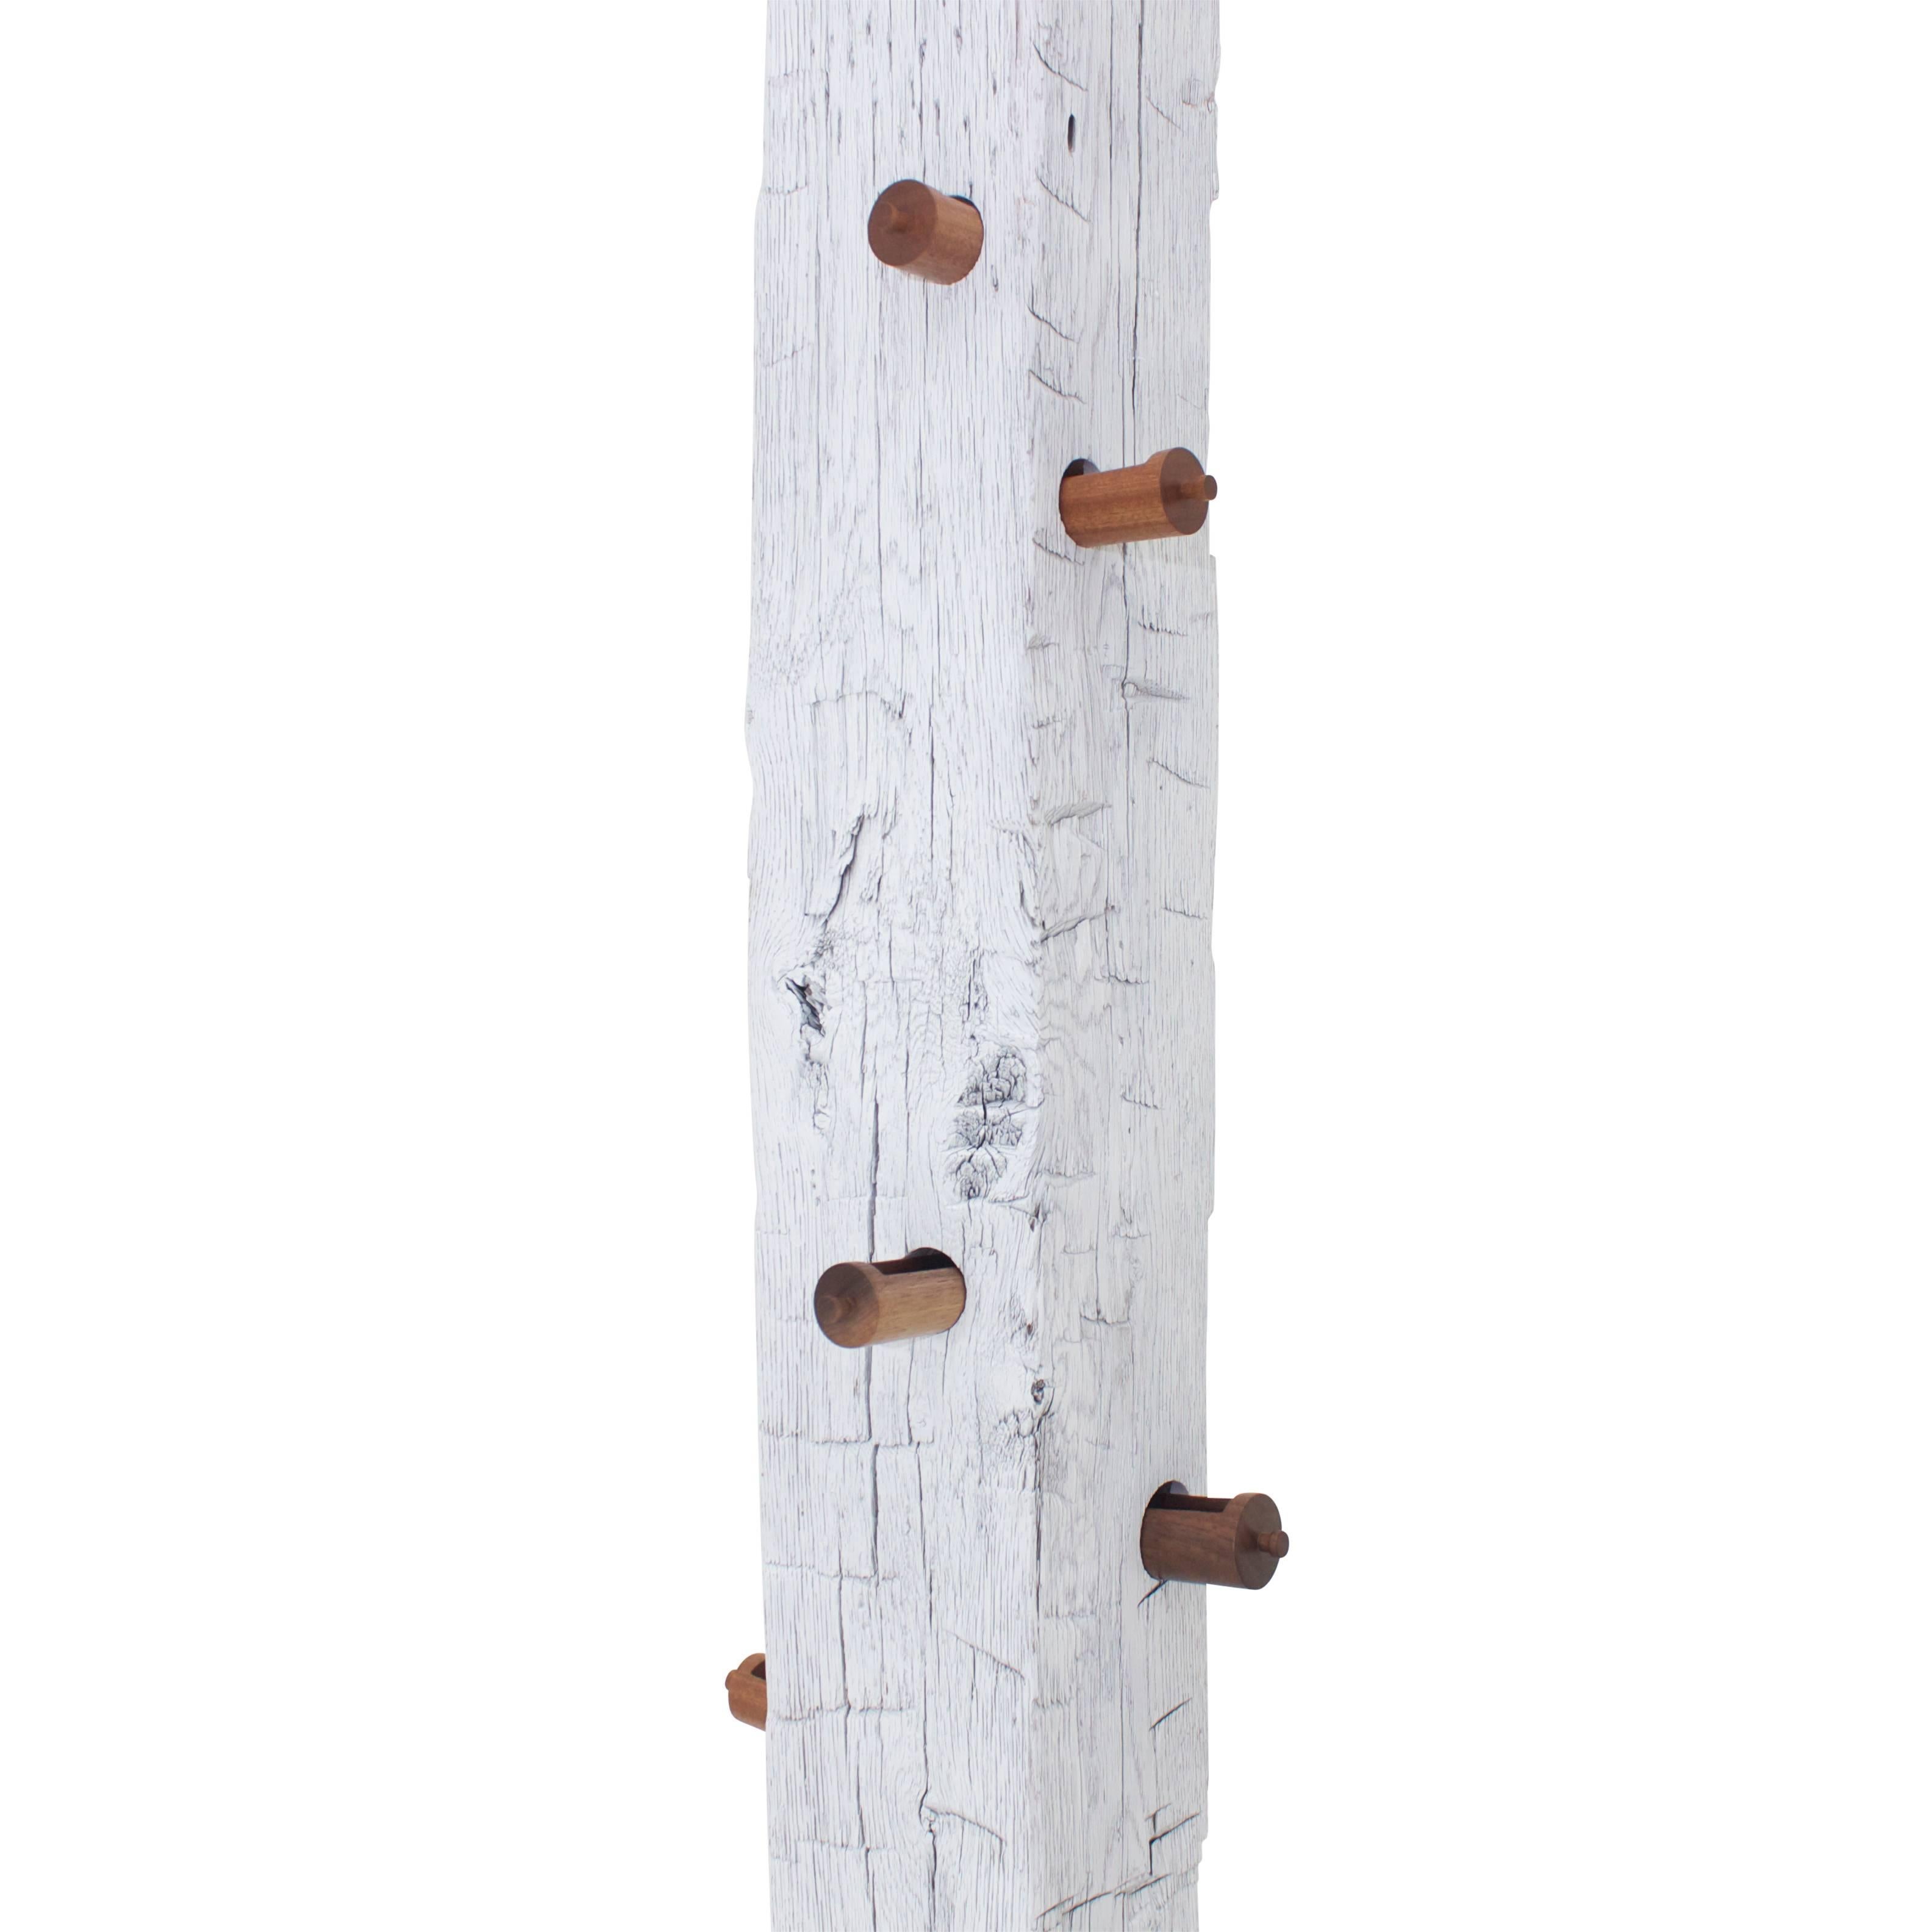 Mousse structurelle en chêne récupérée « TOTEM » avec tiroirs en bois massif tournés à la main